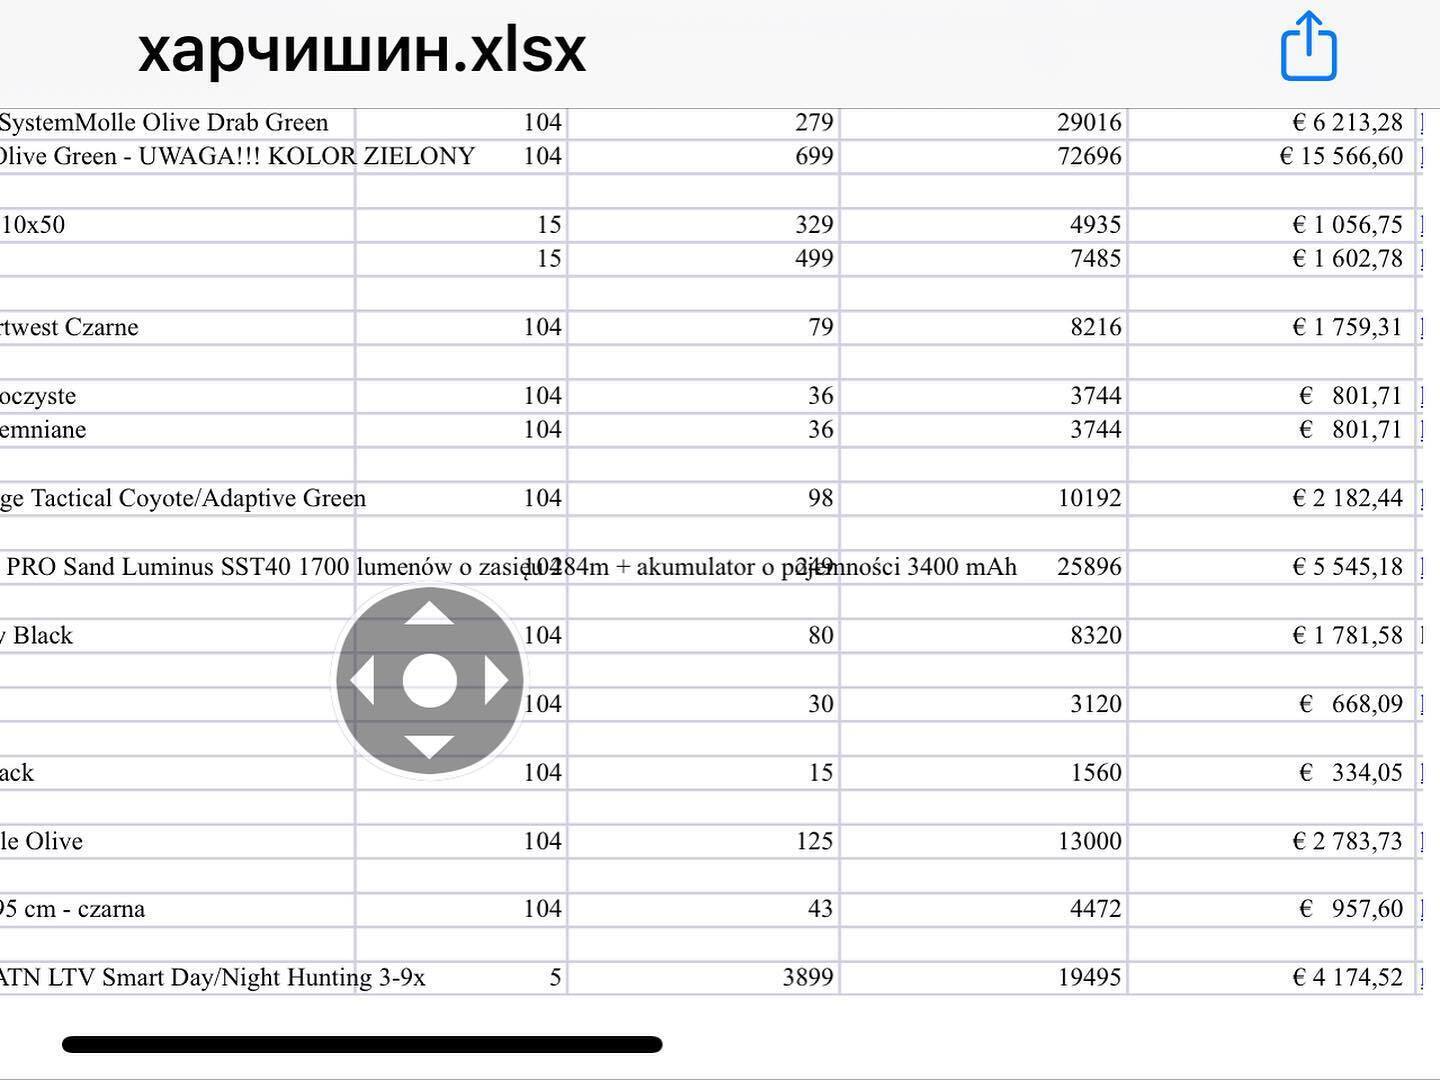 Список вещей, необходимых для украинских бойцов.